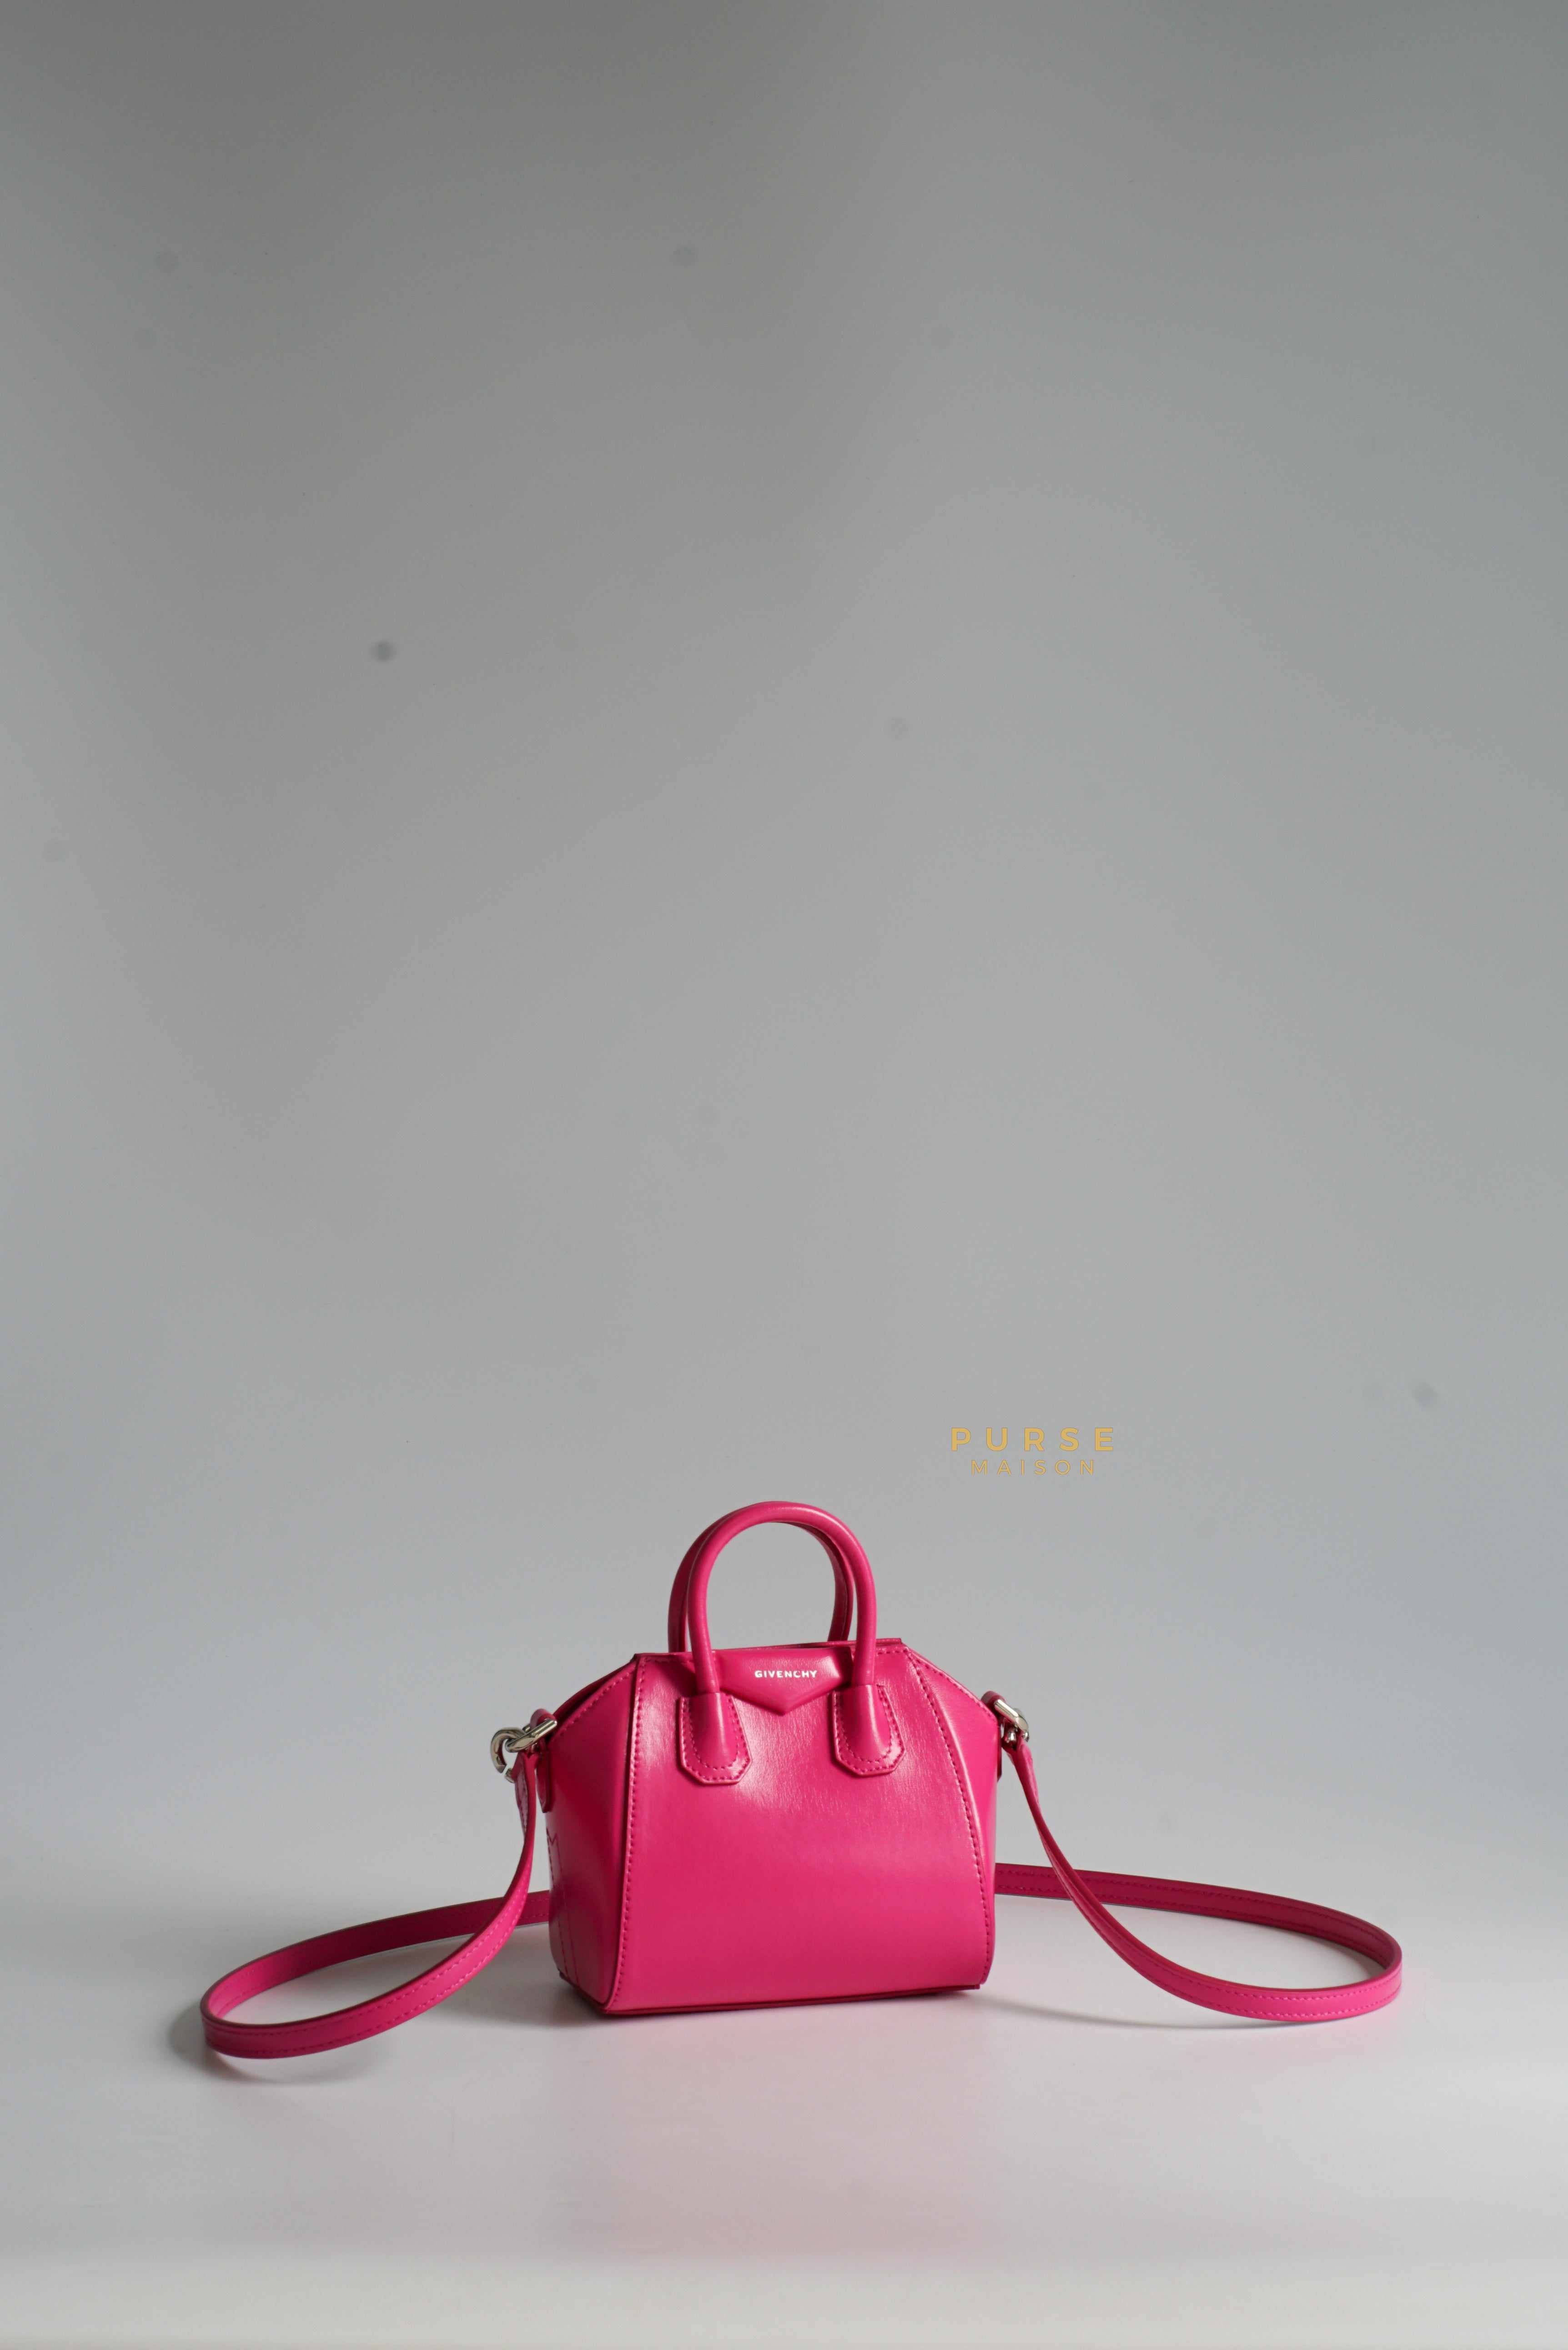 Givenchy Micro Antigona Neon Pink in Calf Leather